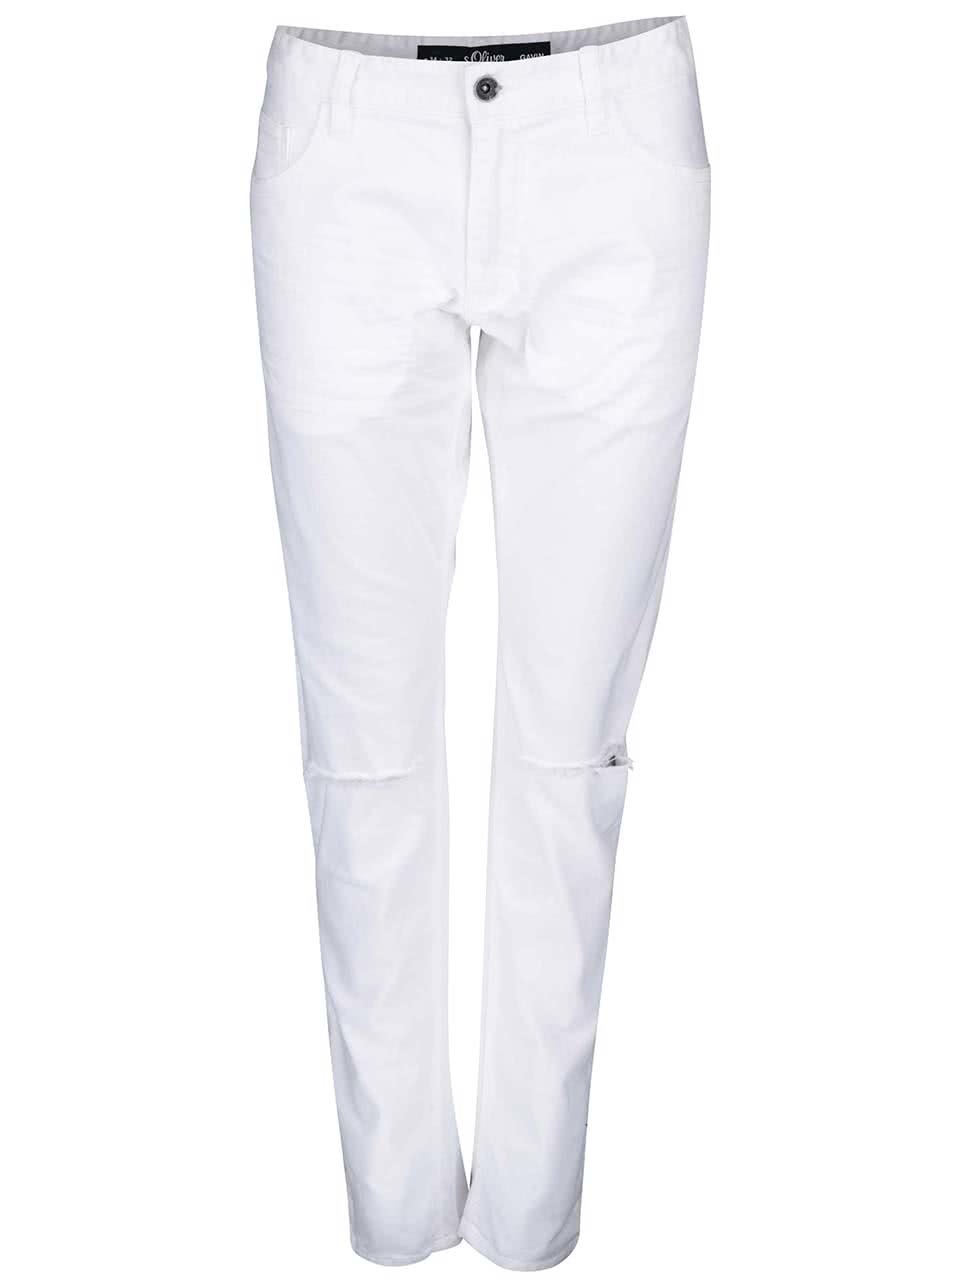 Bílé pánské skinny džíny s roztrhanými koleny s.Oliver